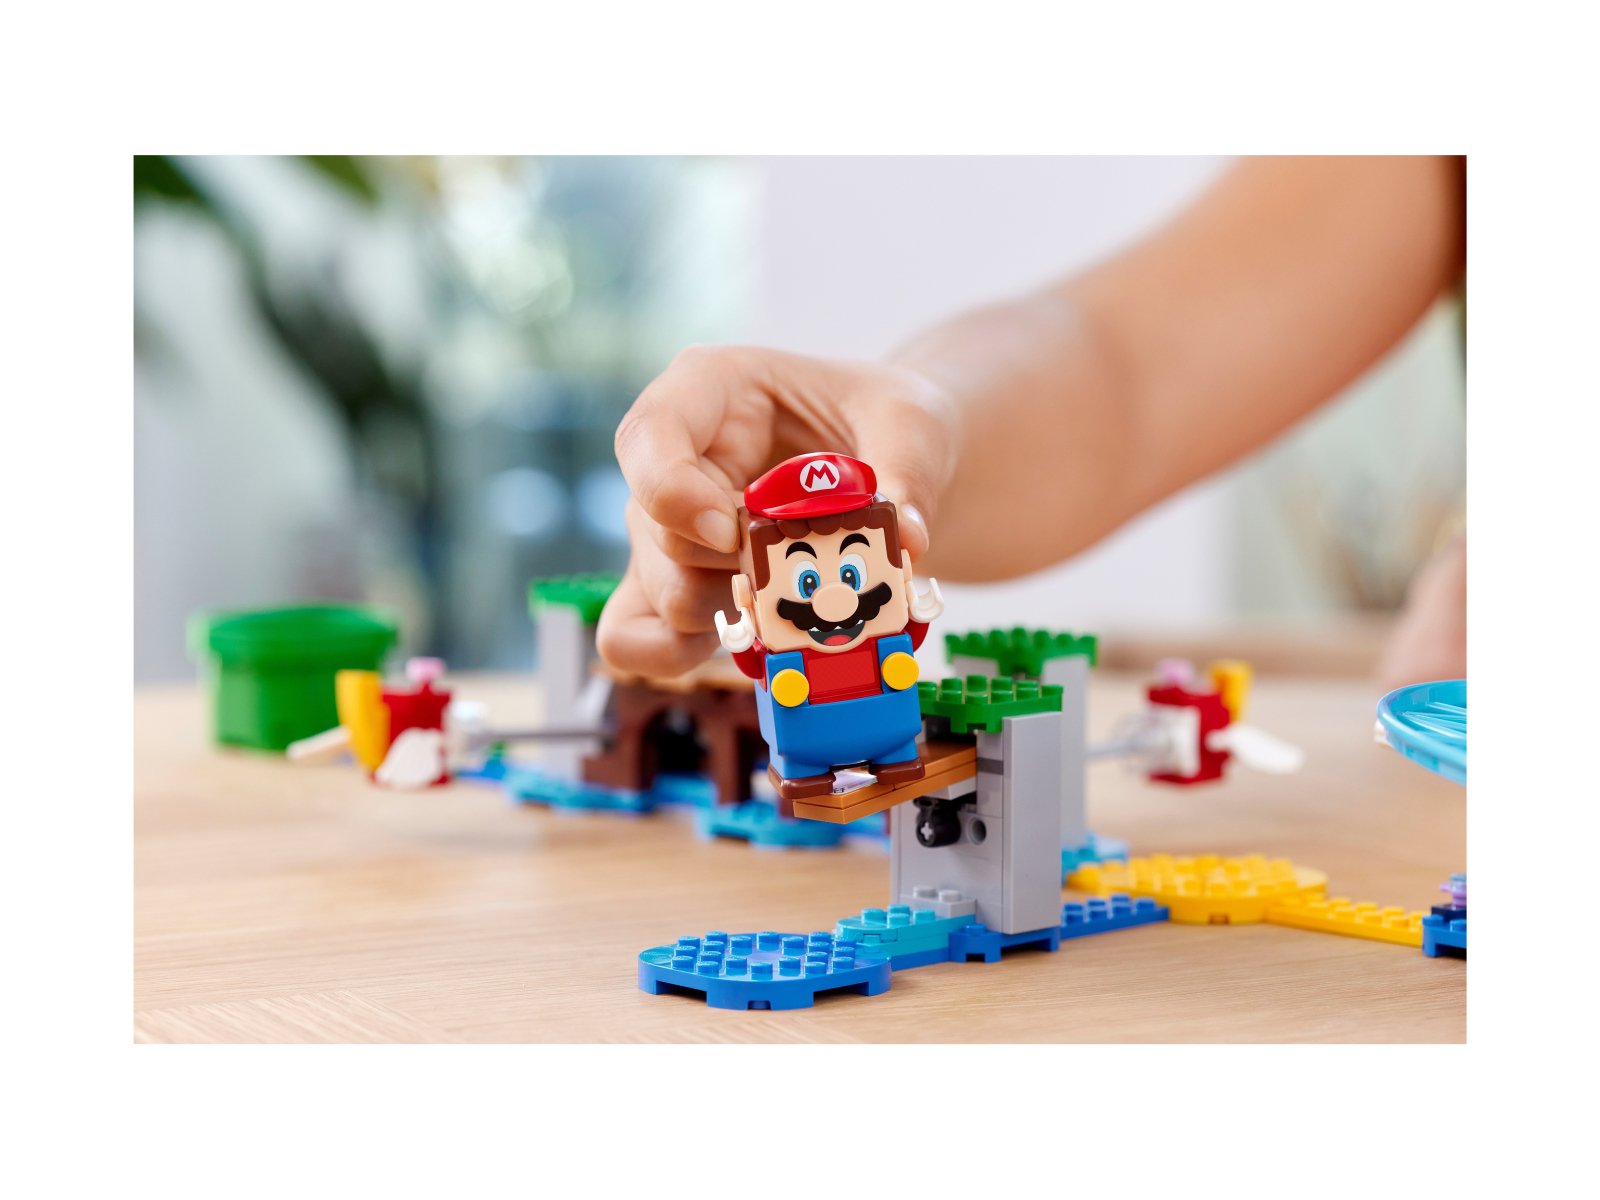 LEGO Super Mario Zestaw rozszerzający Duży jeżowiec i zabawa na plaży 71400